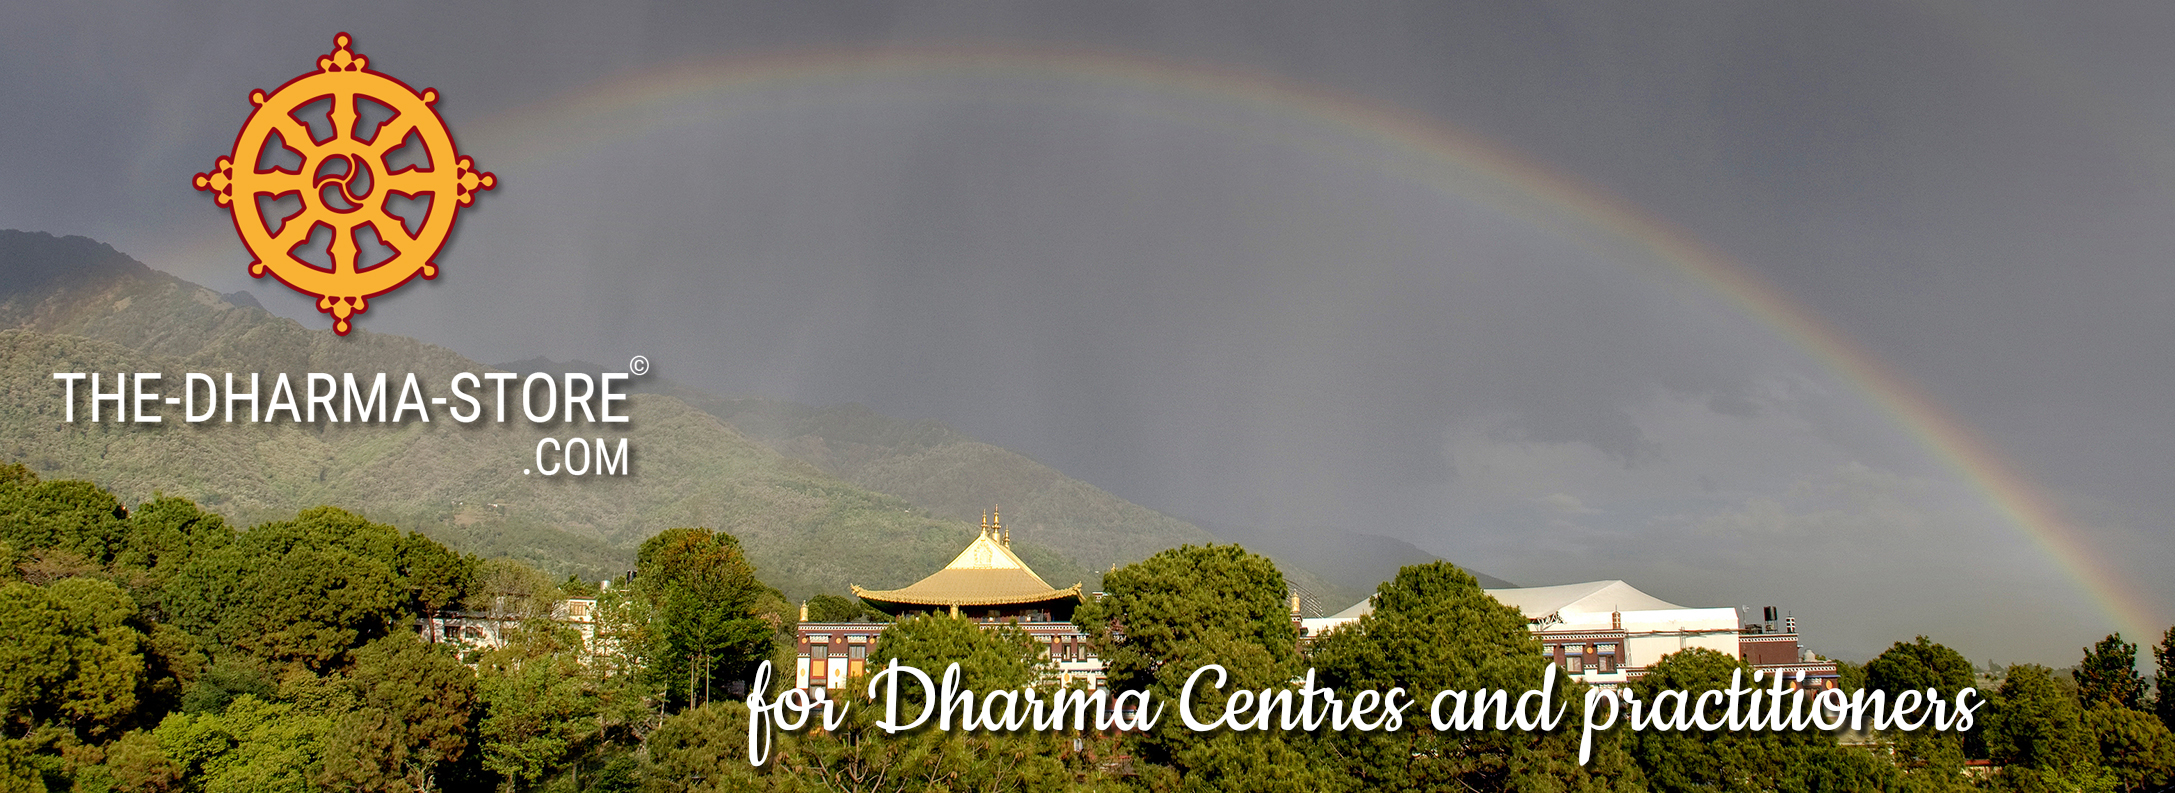 the-dharma-store.com